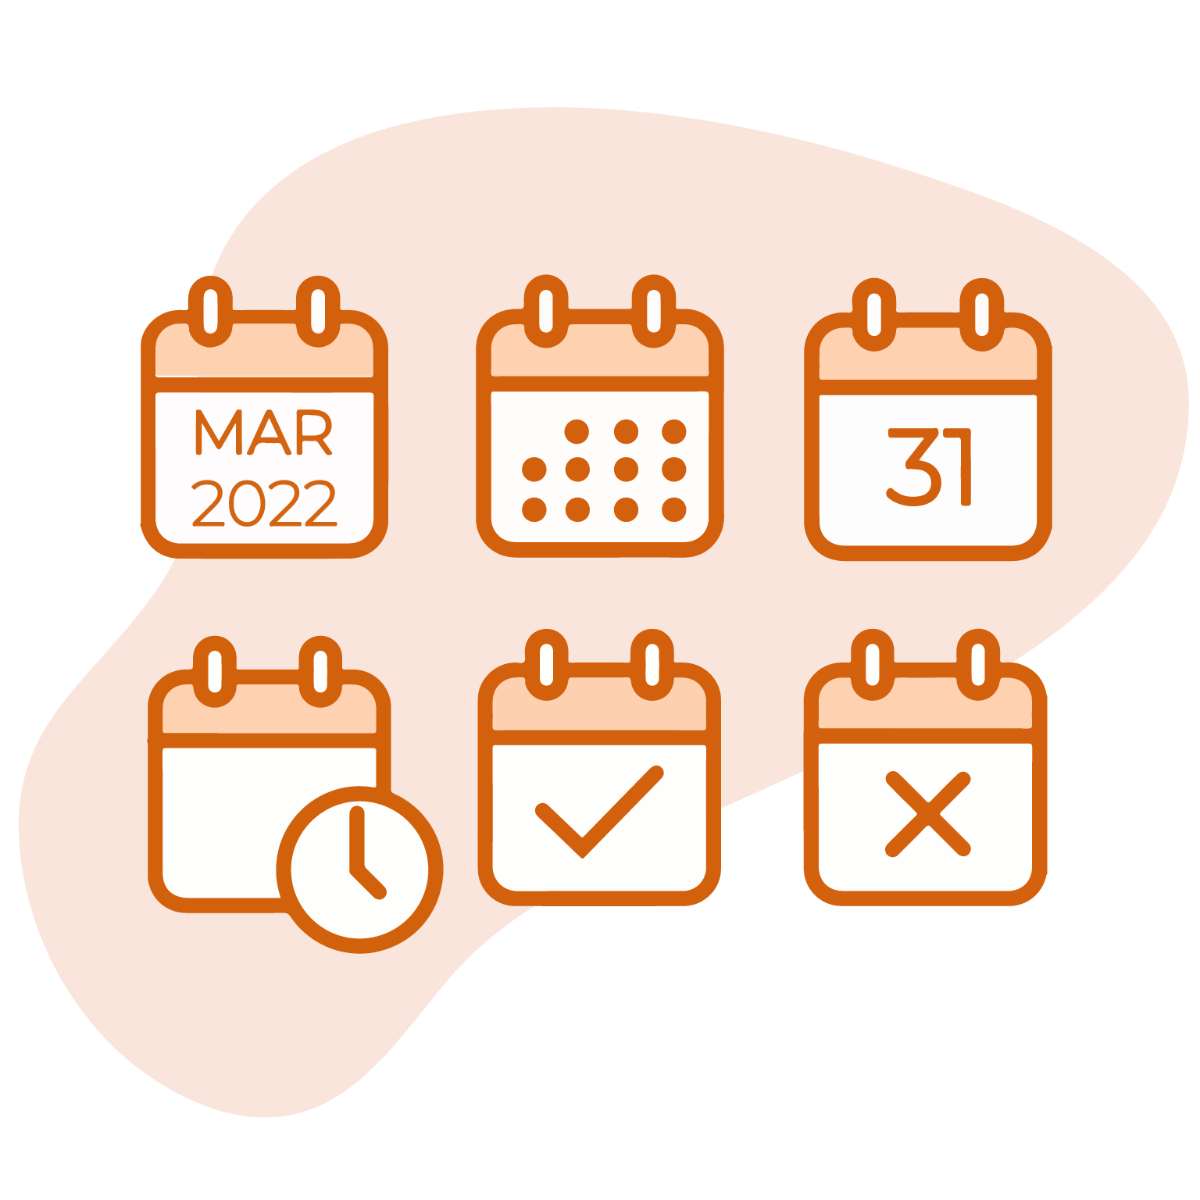 March 2022 Calendar Icon Vector Template